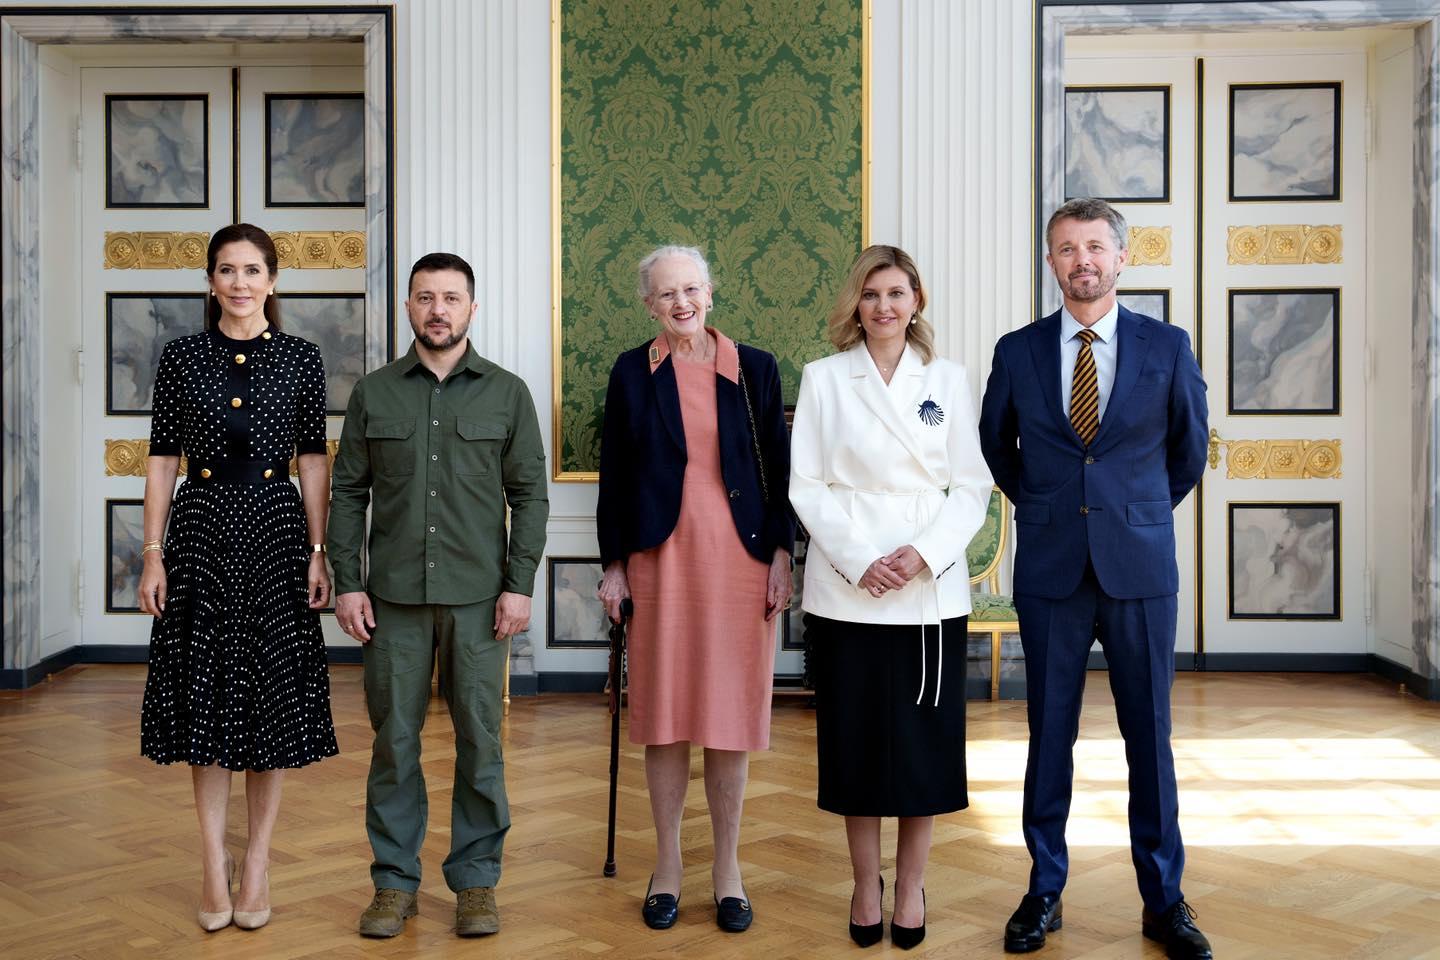 La famille royale danoise rencontre le président ukrainien/ Det danske kongehus